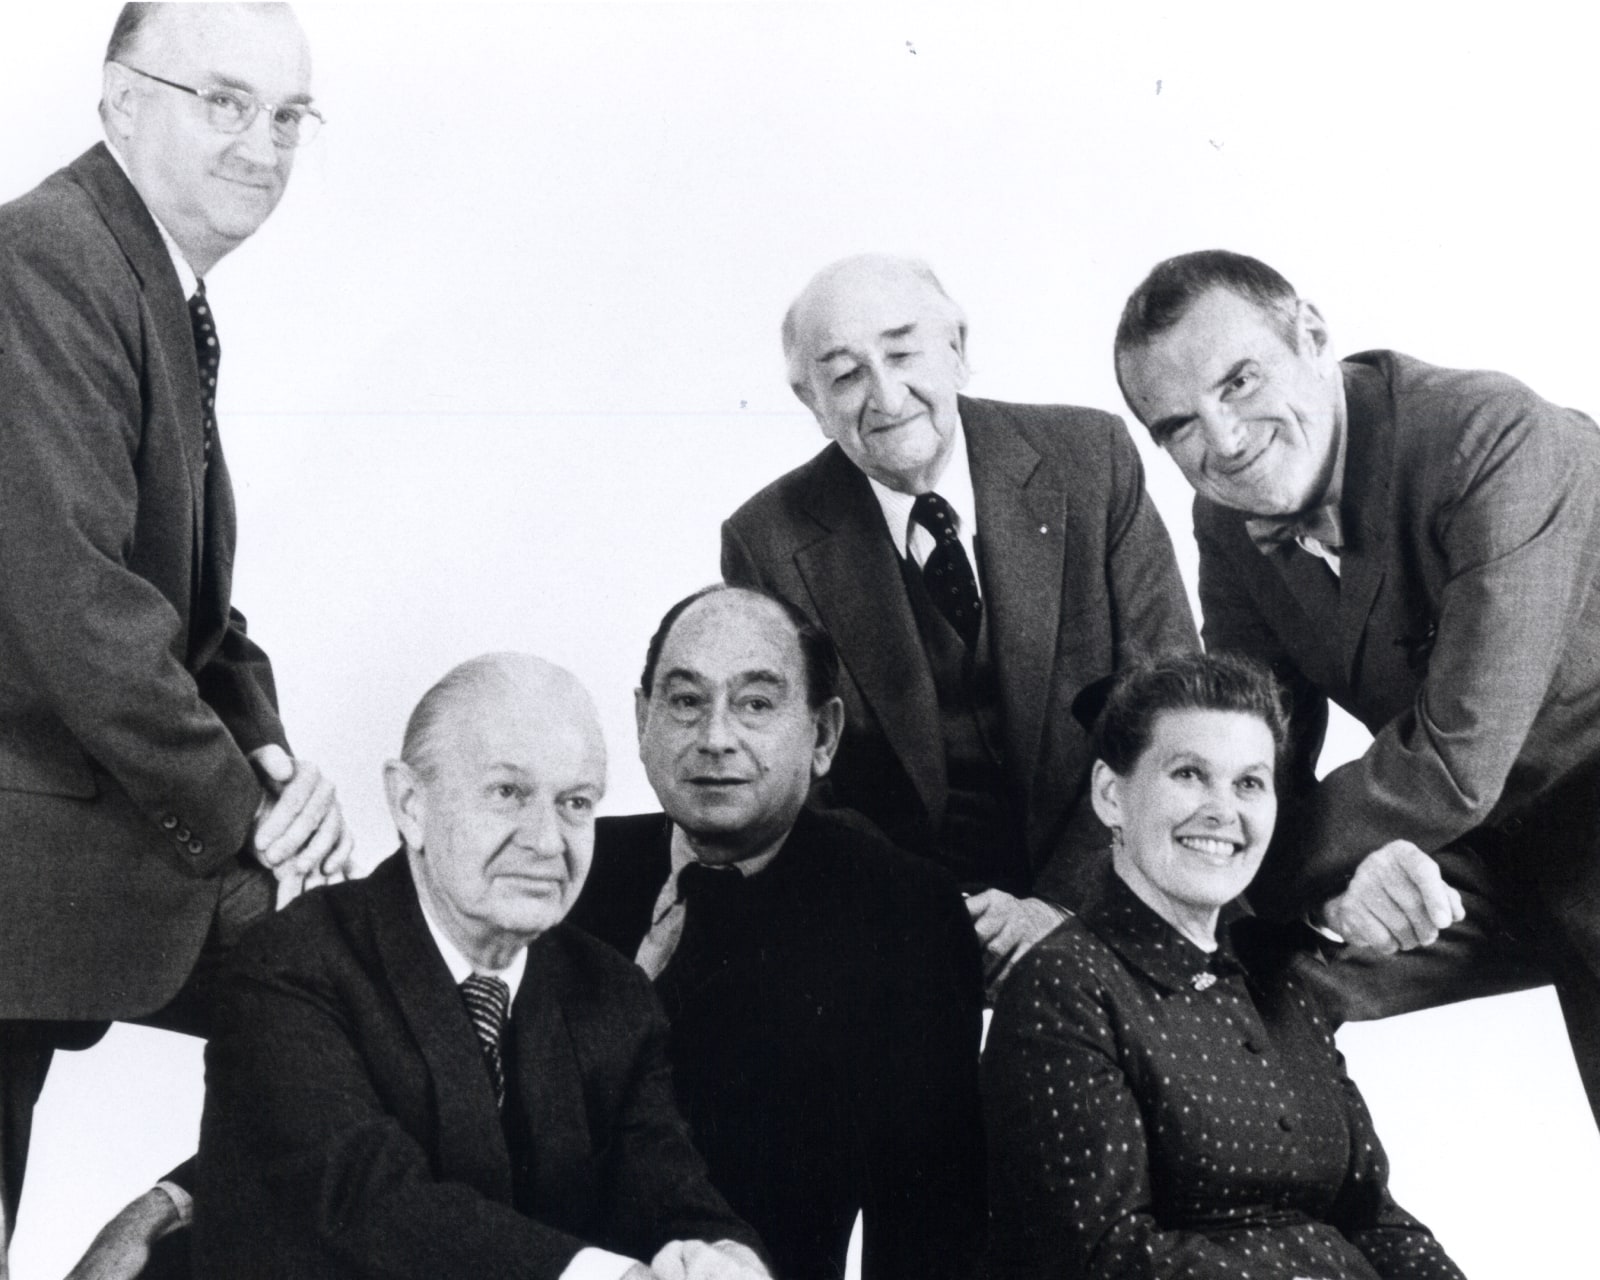 Fundador D.J. De Pree, o diretor de design George Nelson e os designers Robert Propst, Alexander Girard e Ray e Charles Eames.